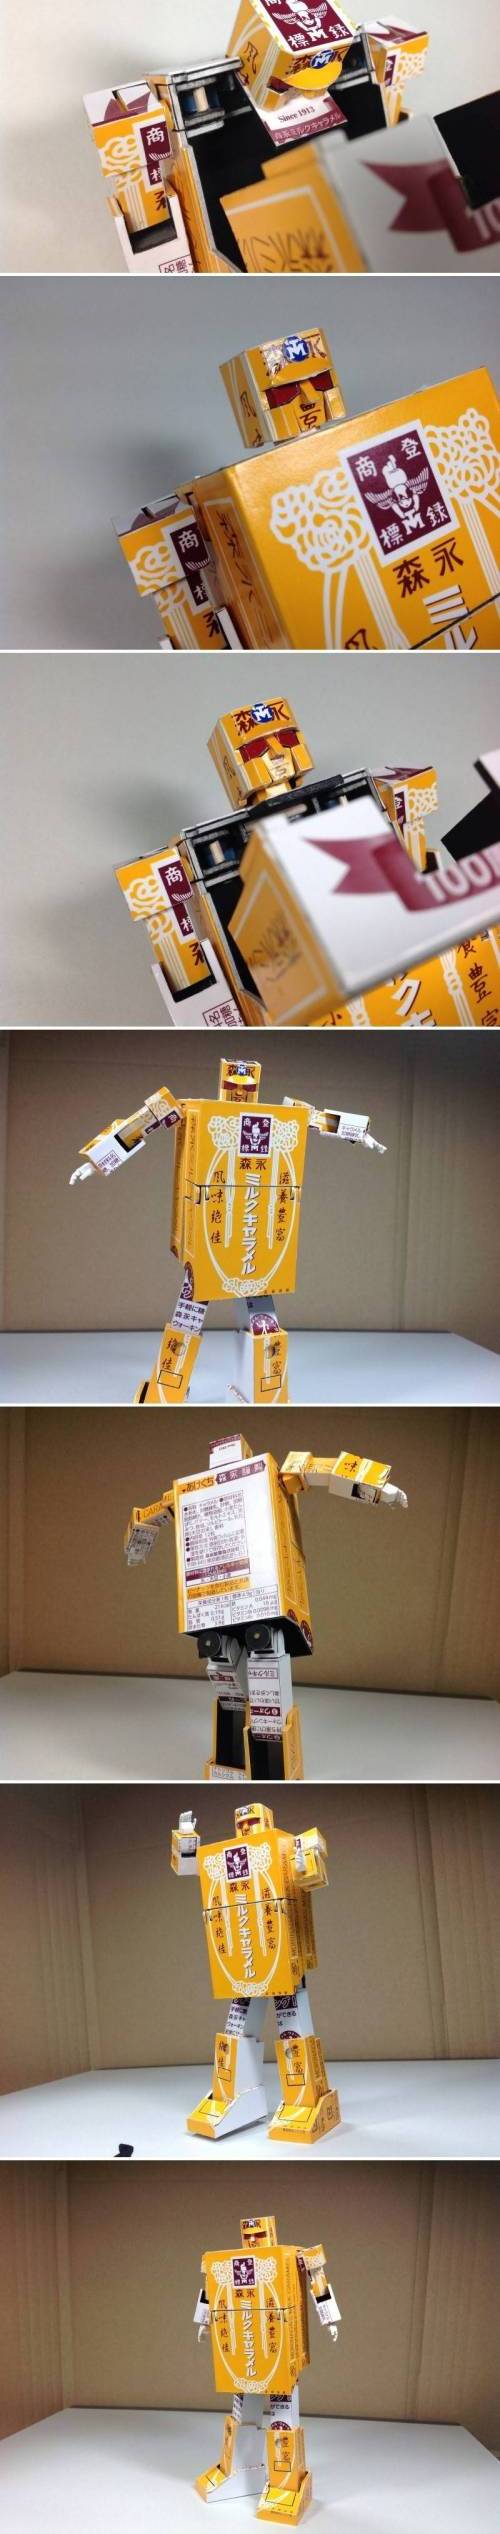 카라멜 로봇.jpg